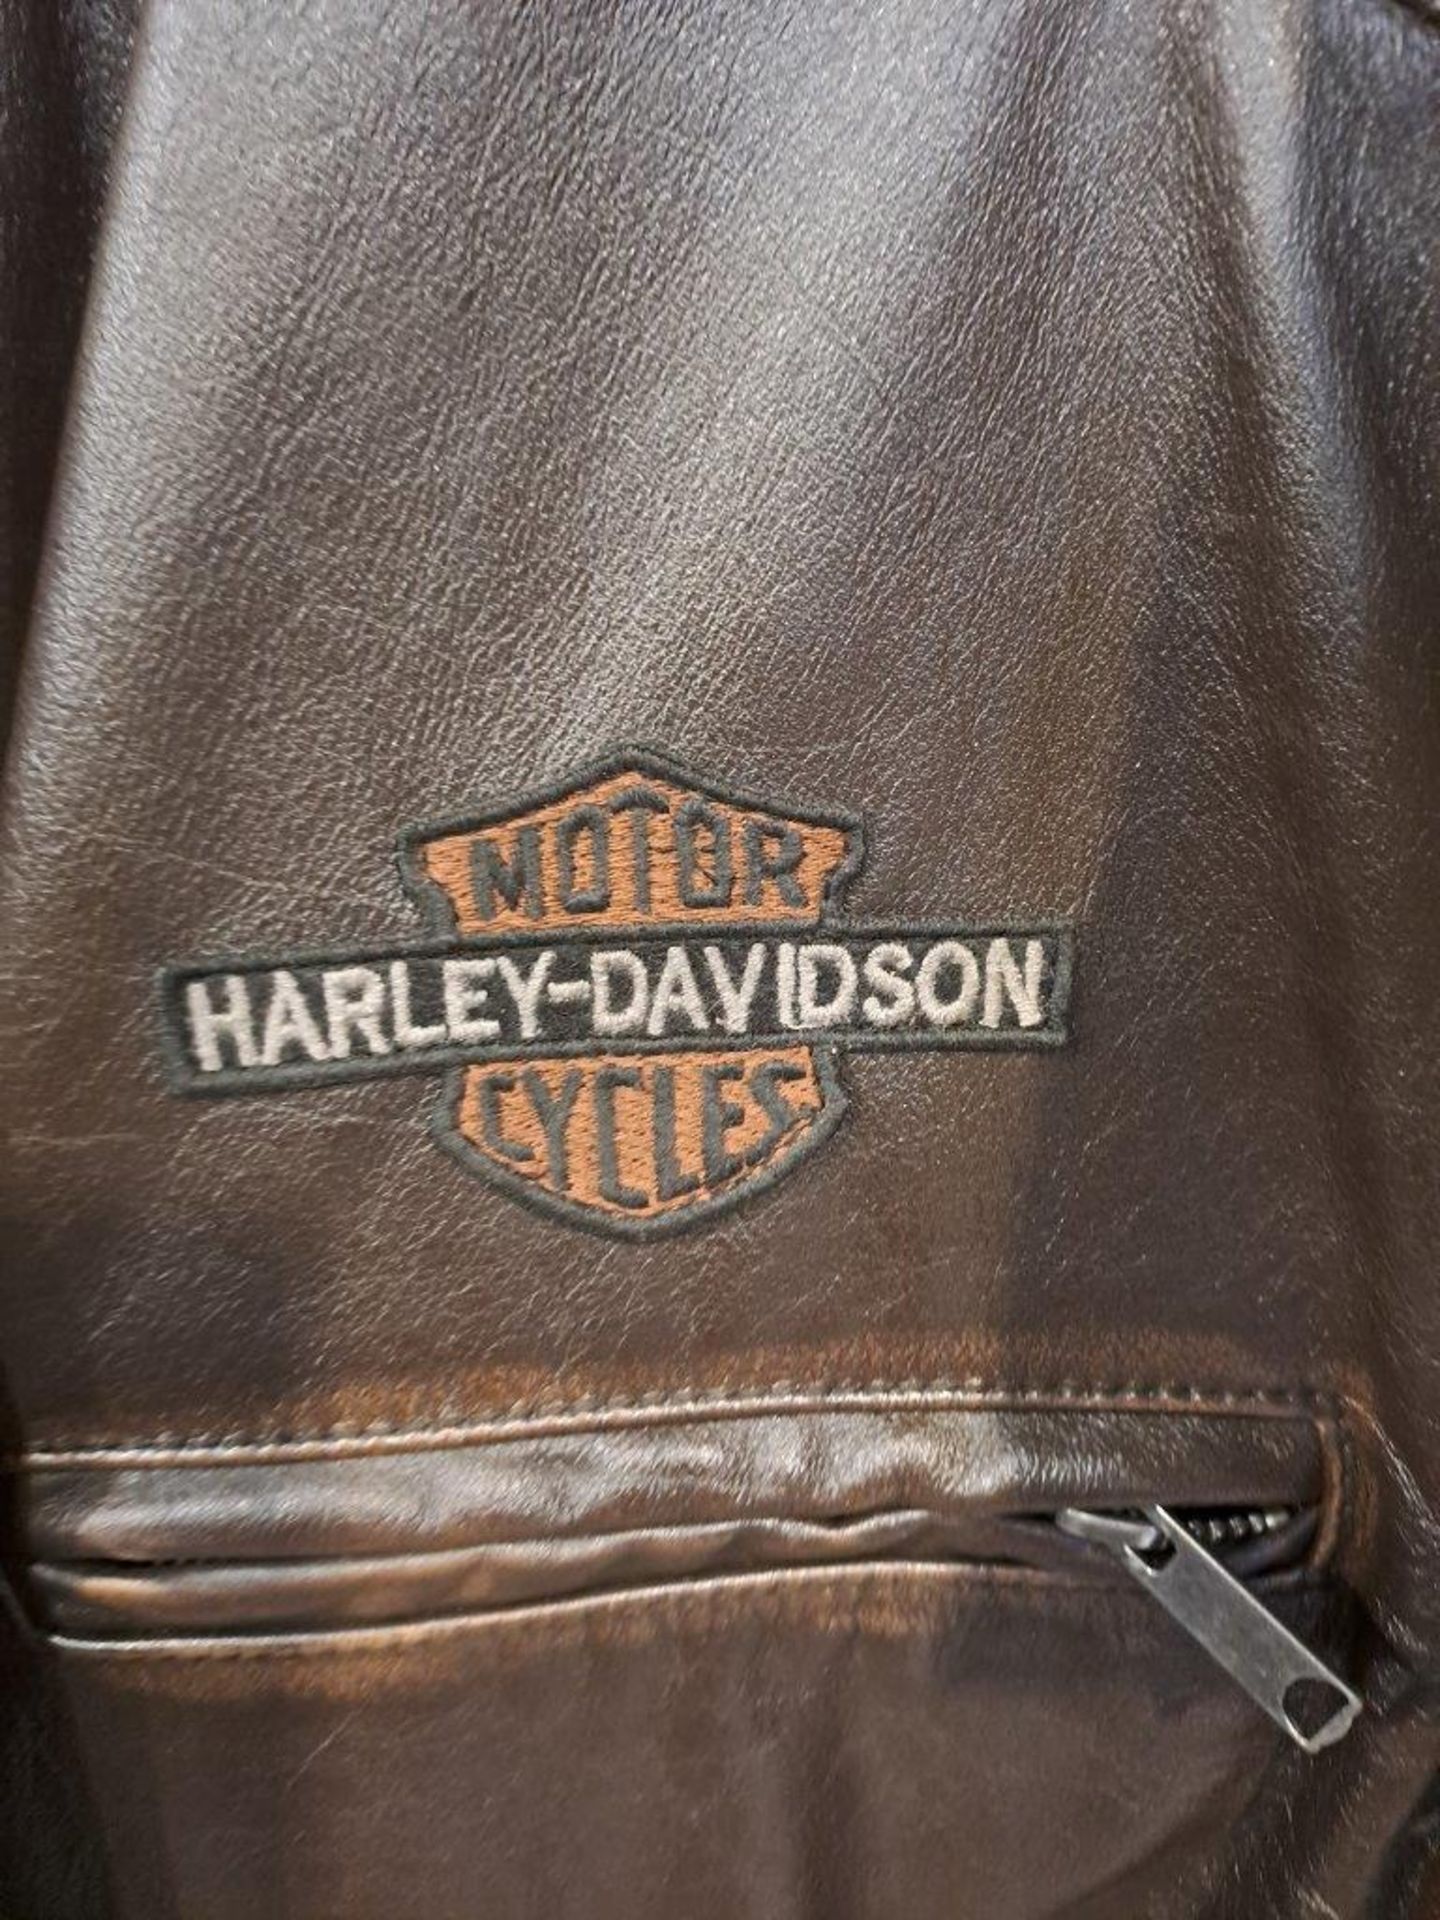 Harley Davidson Brown Leather Large Mens Jacket - Image 3 of 9